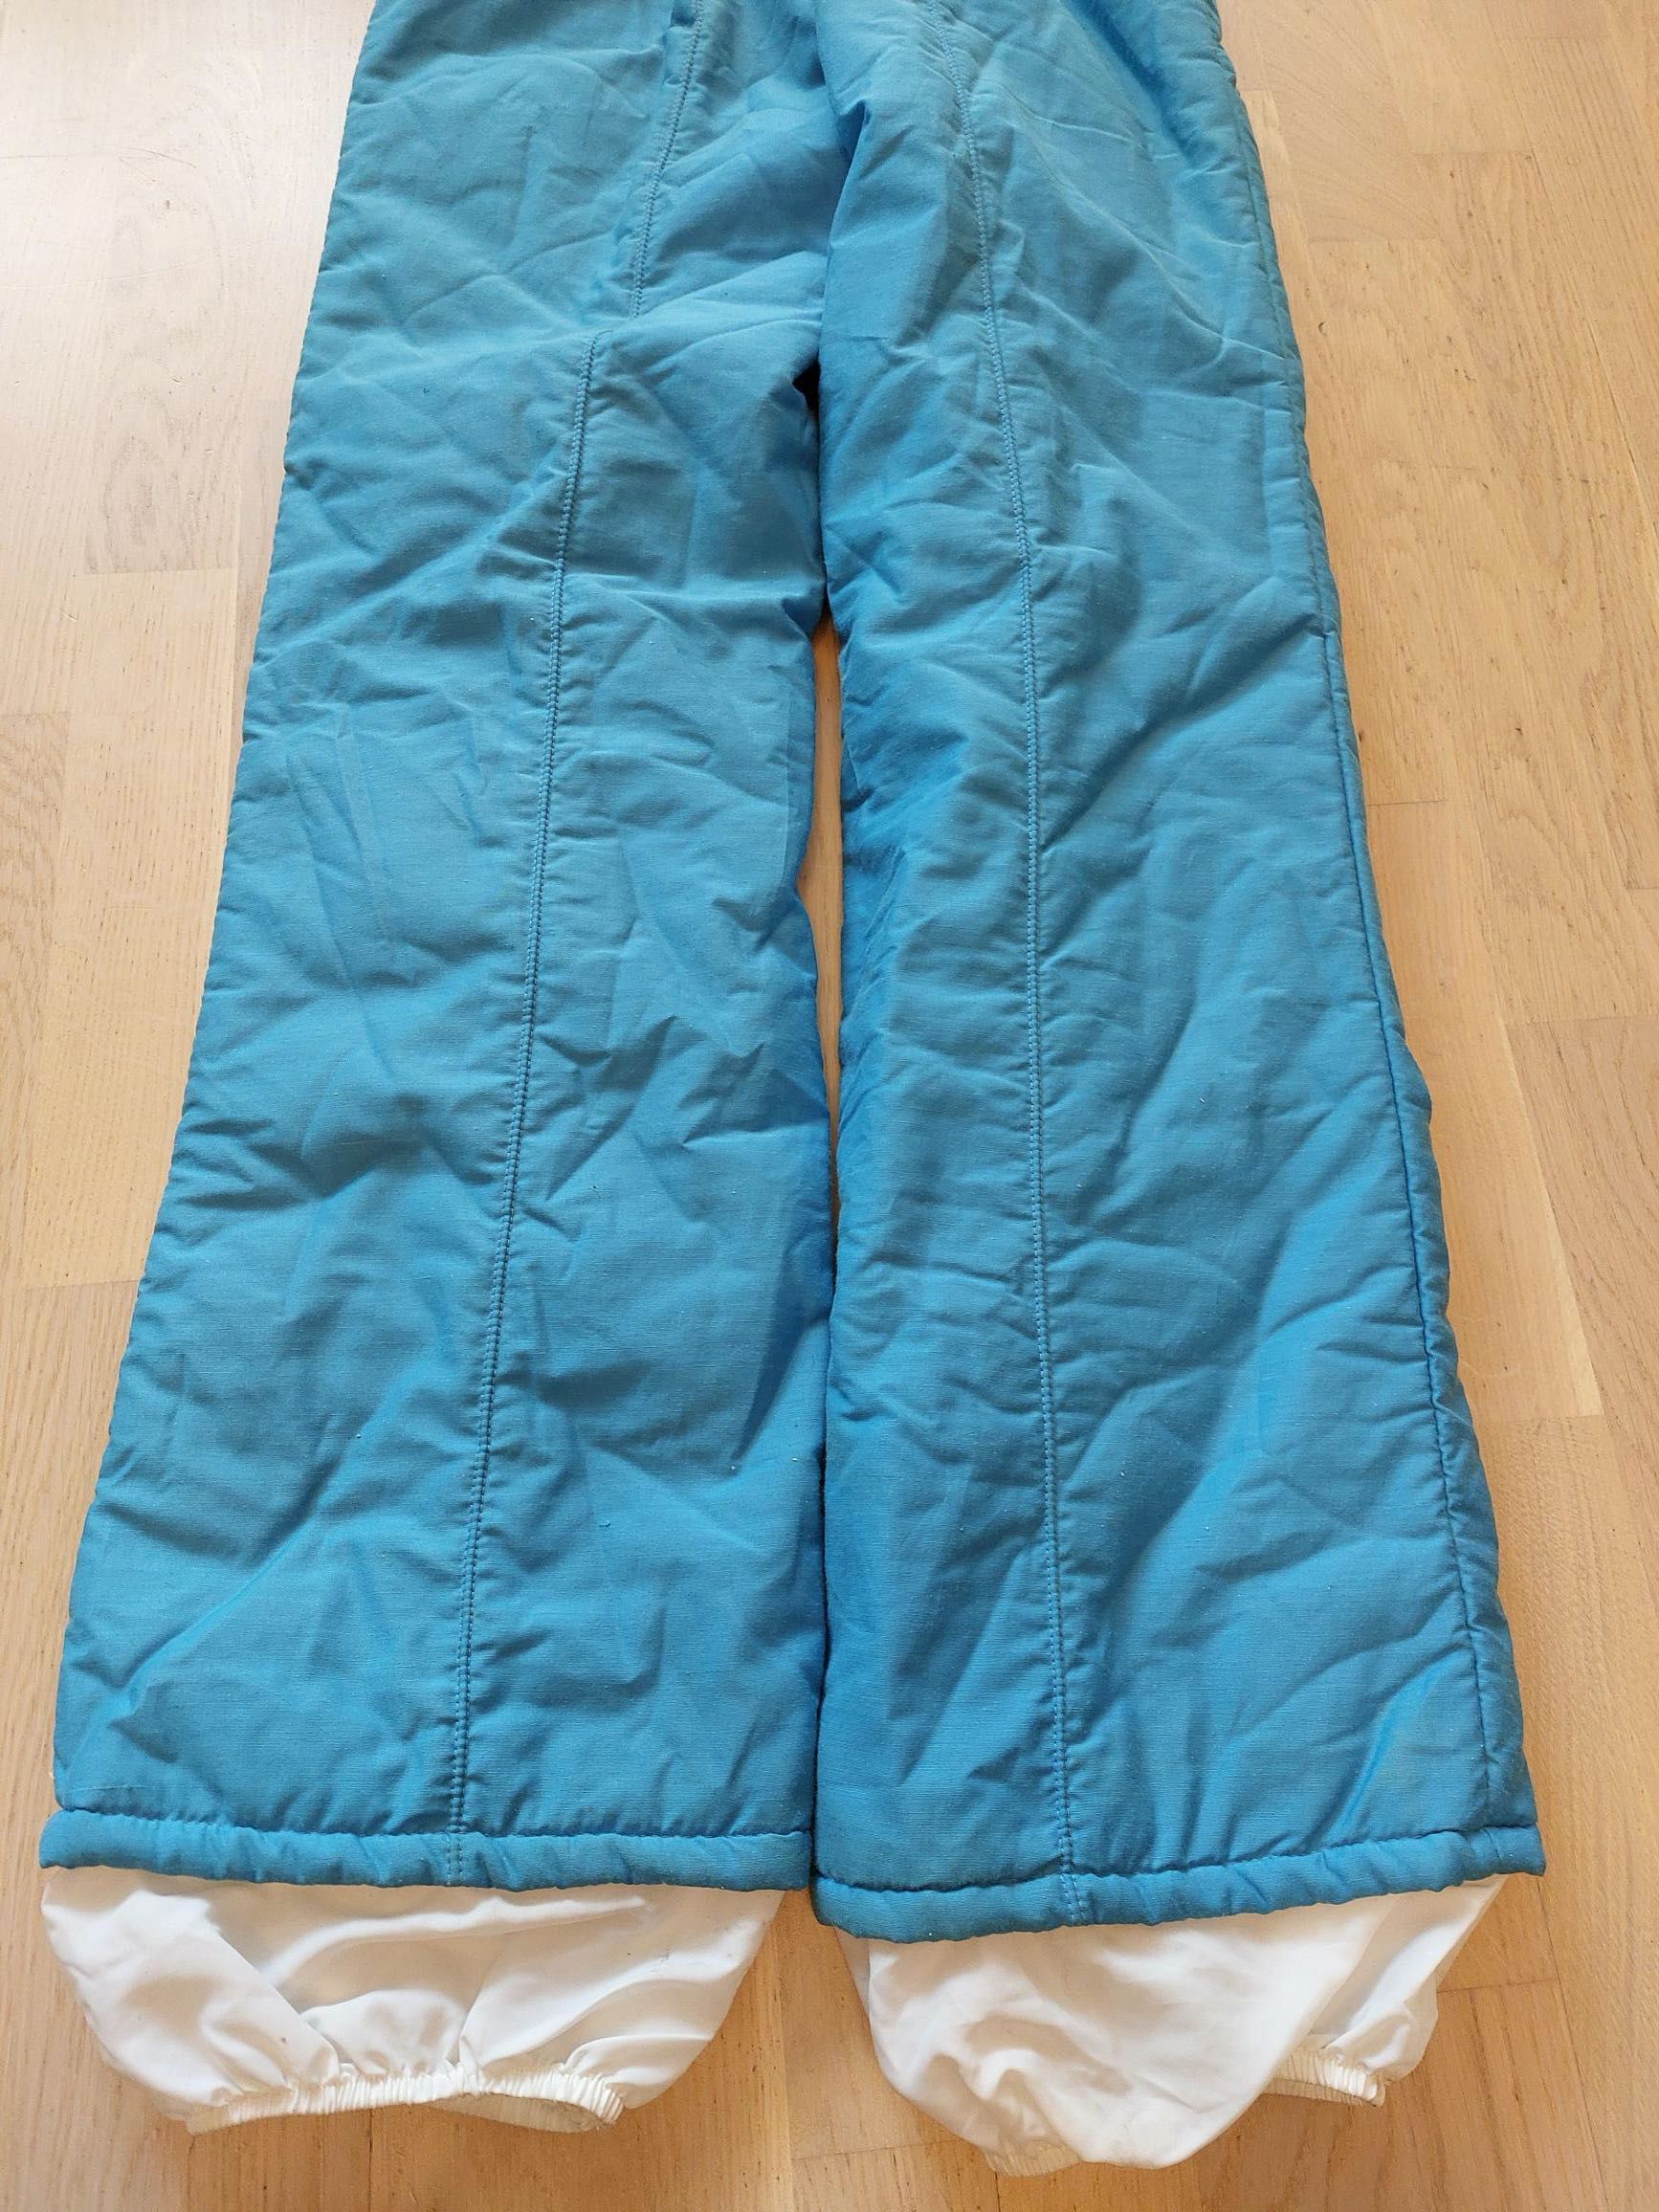 spodnie narciarskie / śniegowe damskie XS, małe S